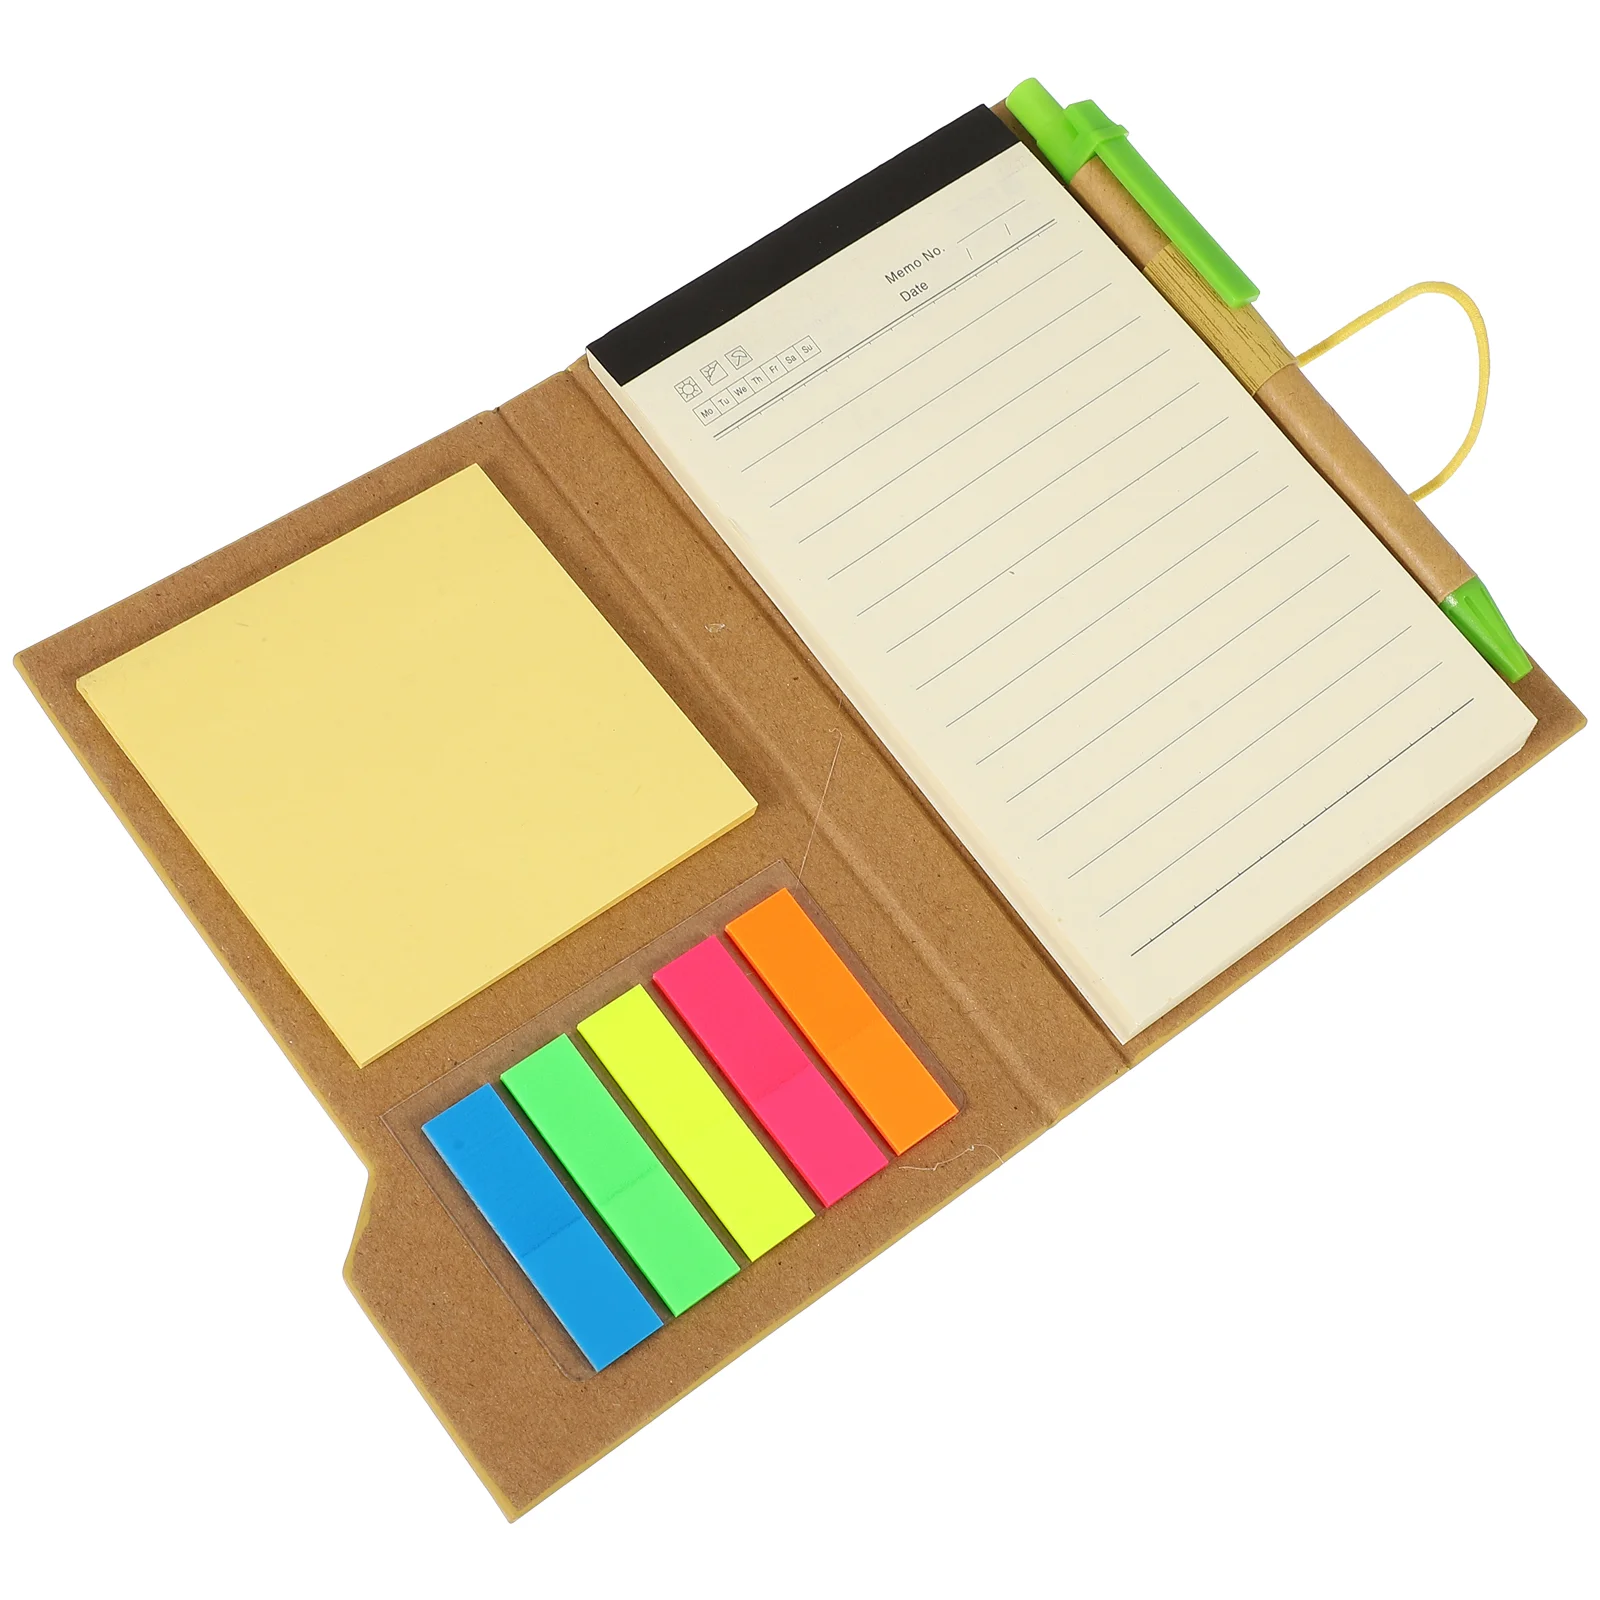 

Блокнот, Стикеры для заметок, цветной ежемесячный планировщик, записная книжка, простой стильный бумажный блокнот для заметок